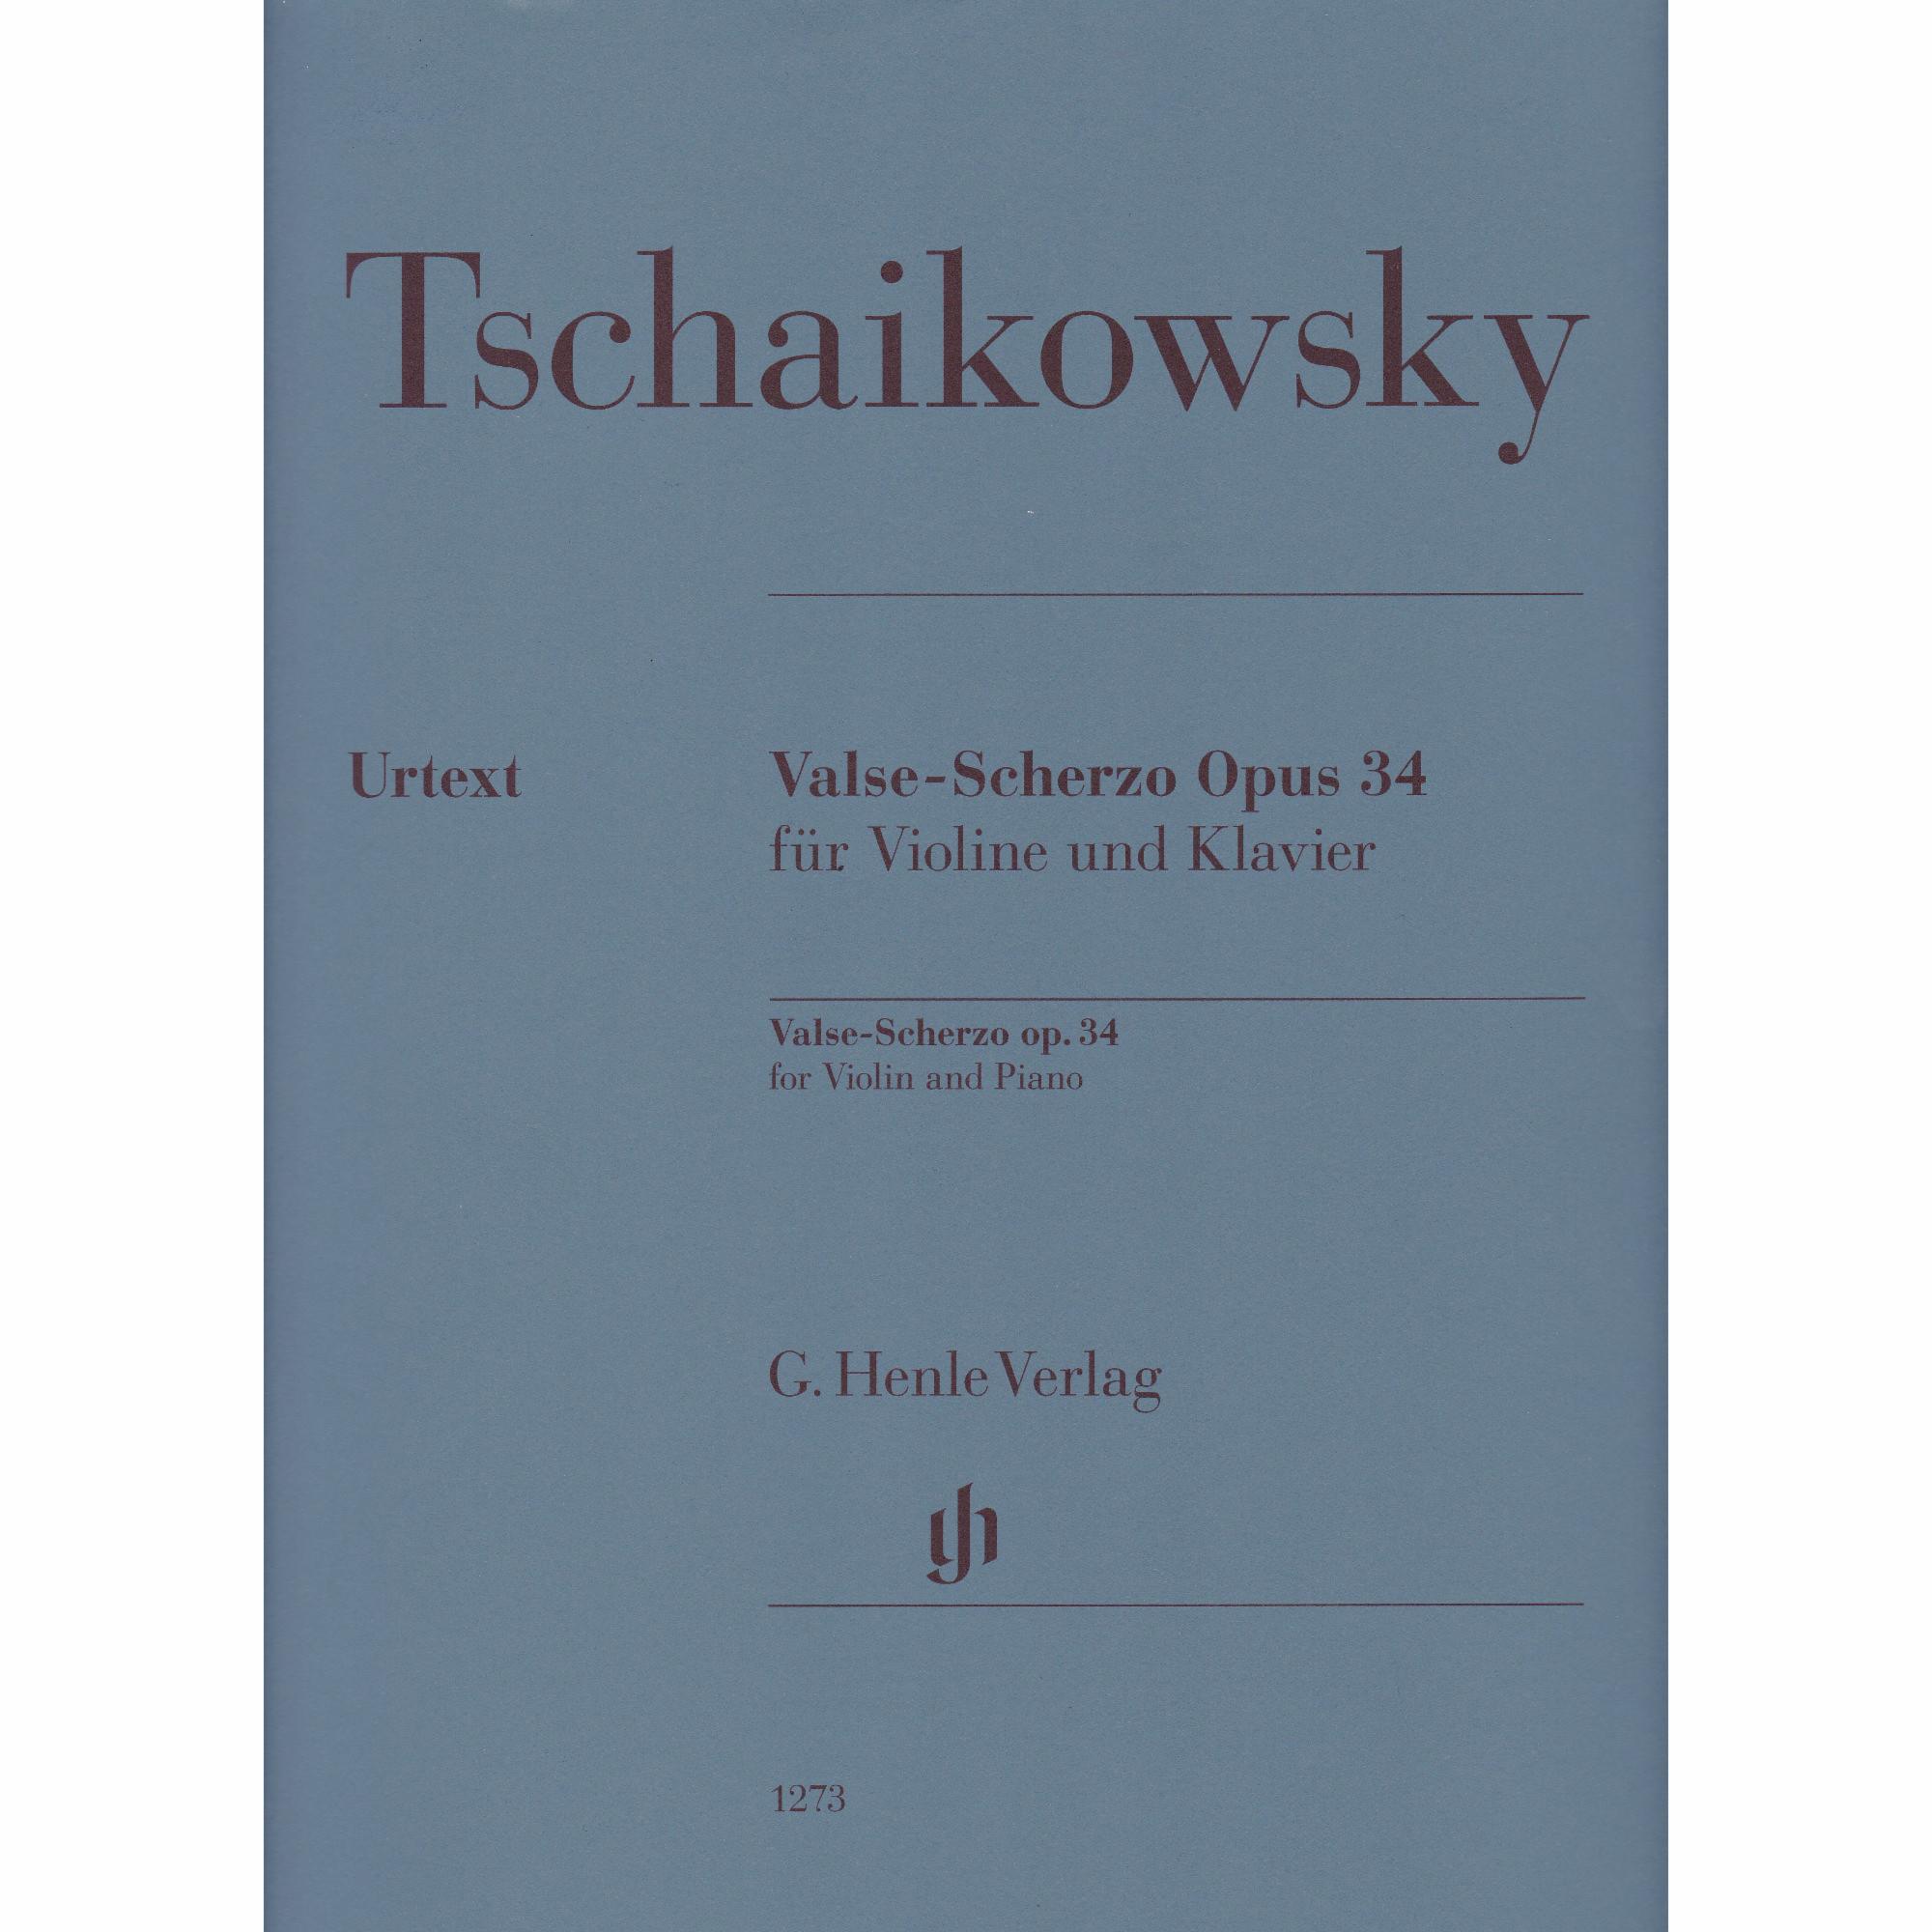 Valse-Scherzo in C Major for Violin and Piano, Op. 34